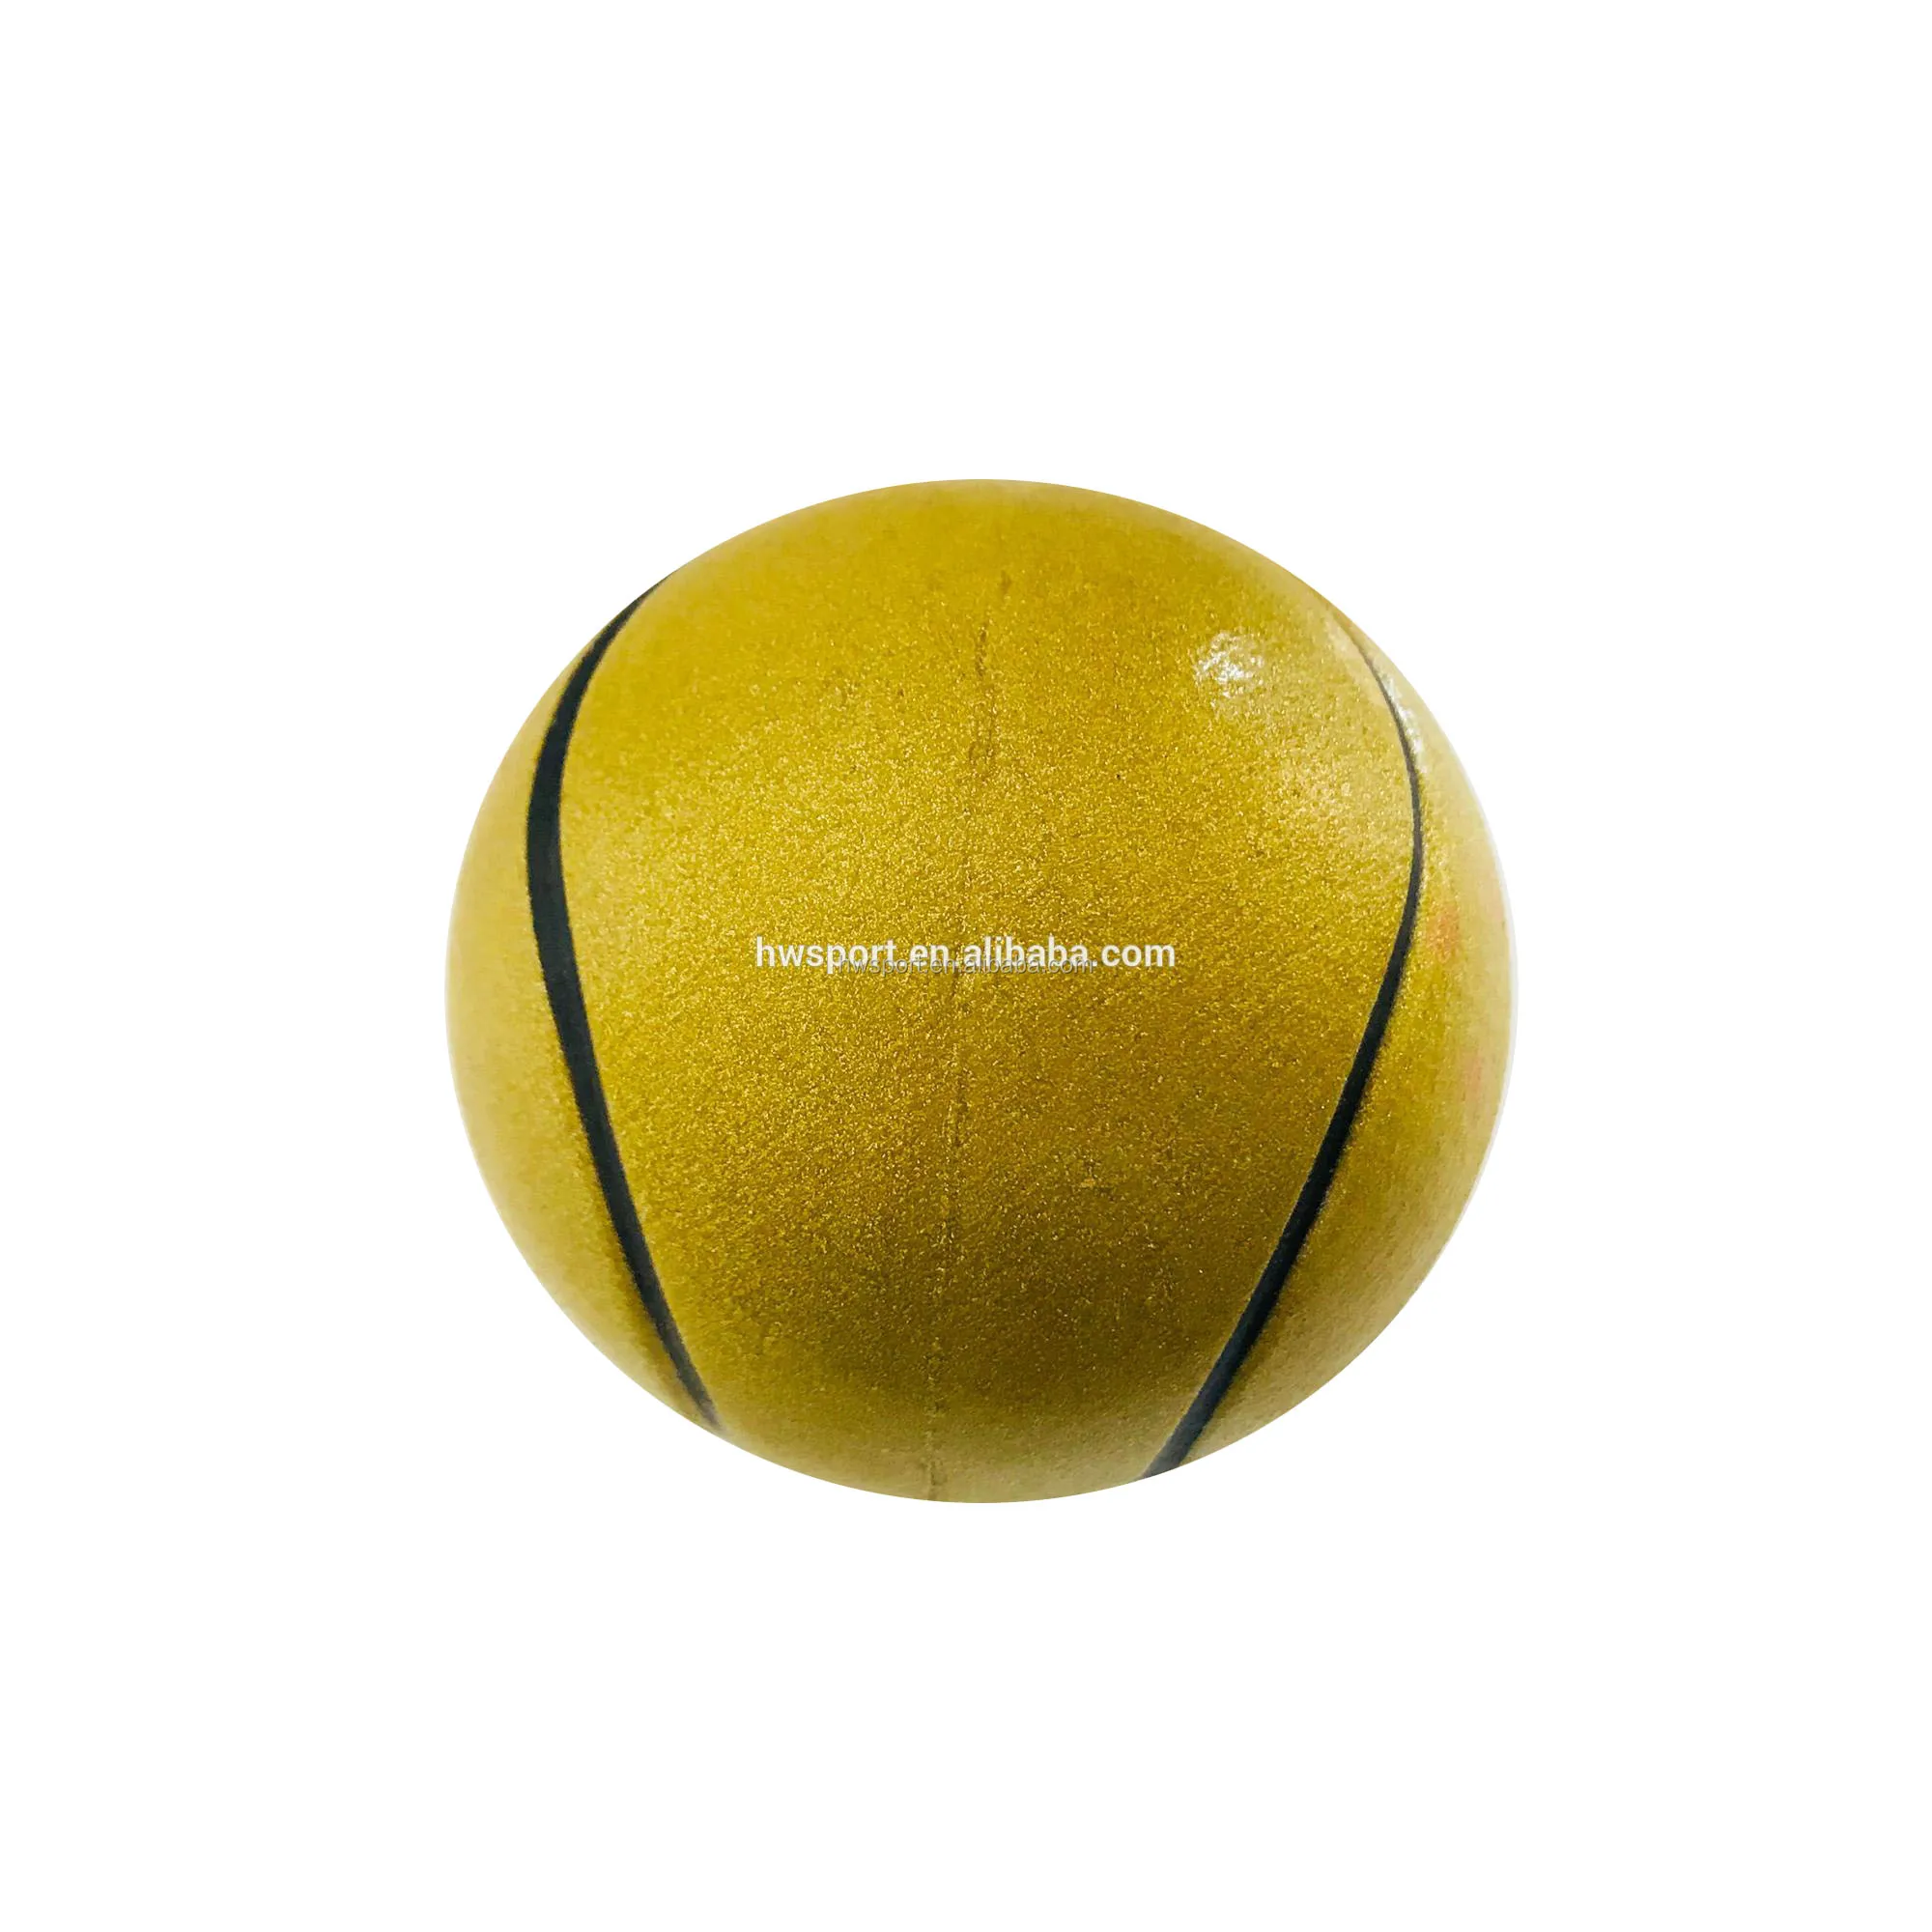 tennis ball bouncing